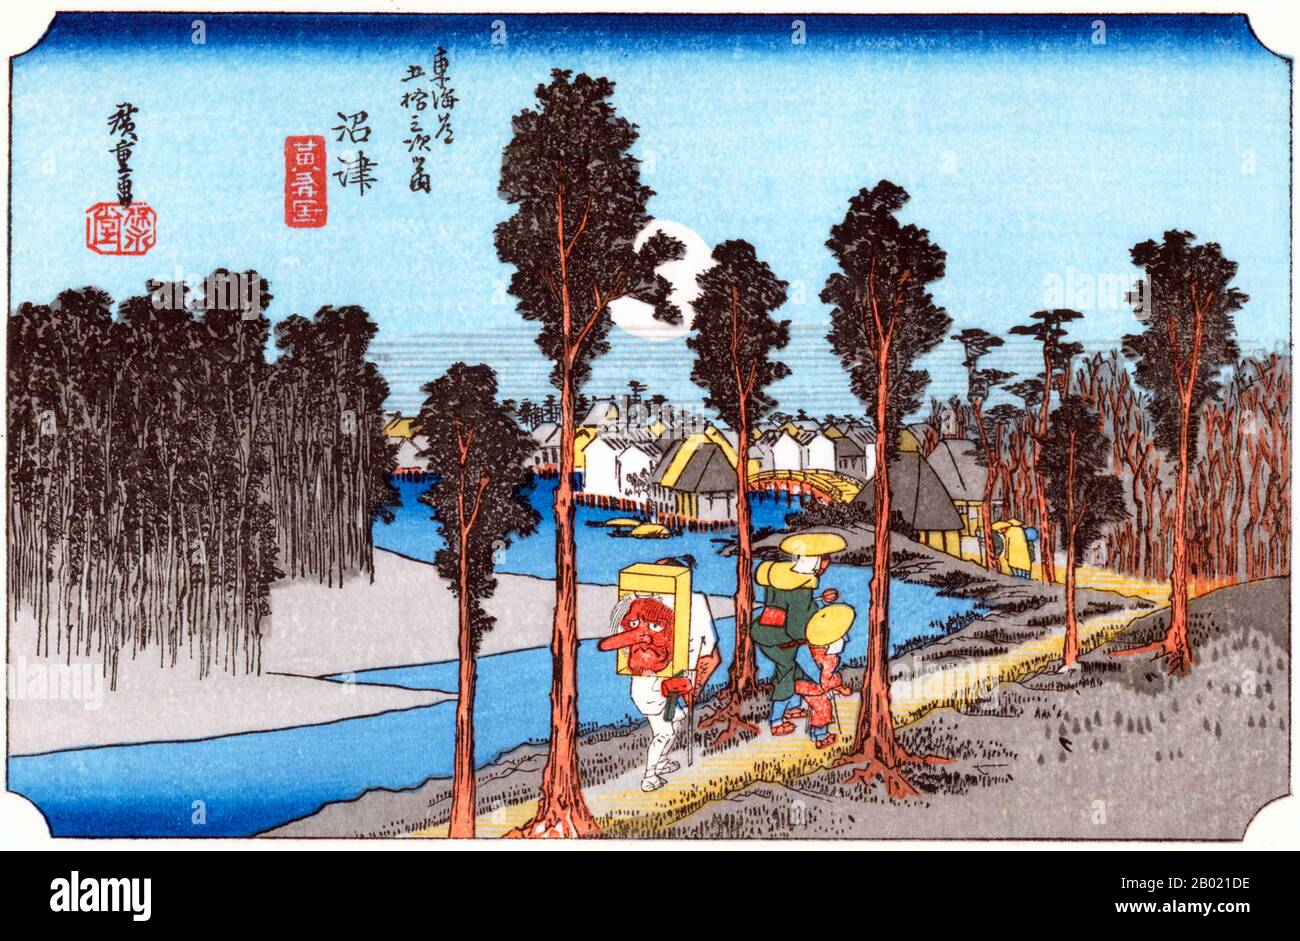 Namazu: Voyageurs marchant le long de la rive de la rivière, bordée d'arbres, vers le village devant, sous une immense lune pleine dans un ciel bleu profond, l'un d'eux transportant sur son dos un grand masque Tengu, la marque d'un pèlerin au sanctuaire de Shinto de Kompira sur l'île de Shikoku. Forêt sombre d'arbres sur la rive supplémentaire de la rivière. Utagawa Hiroshige (歌川 広重, 1797 – 12 octobre 1858) était un artiste ukiyo-e japonais et l'un des derniers grands artistes de cette tradition. Il a également été appelé Andō Hiroshige (安藤 広重) (une combinaison irrégulière de nom de famille et de nom d'art) et par le nom d'art de Ichiyūsai Hiroshige (一幽斎廣 Banque D'Images